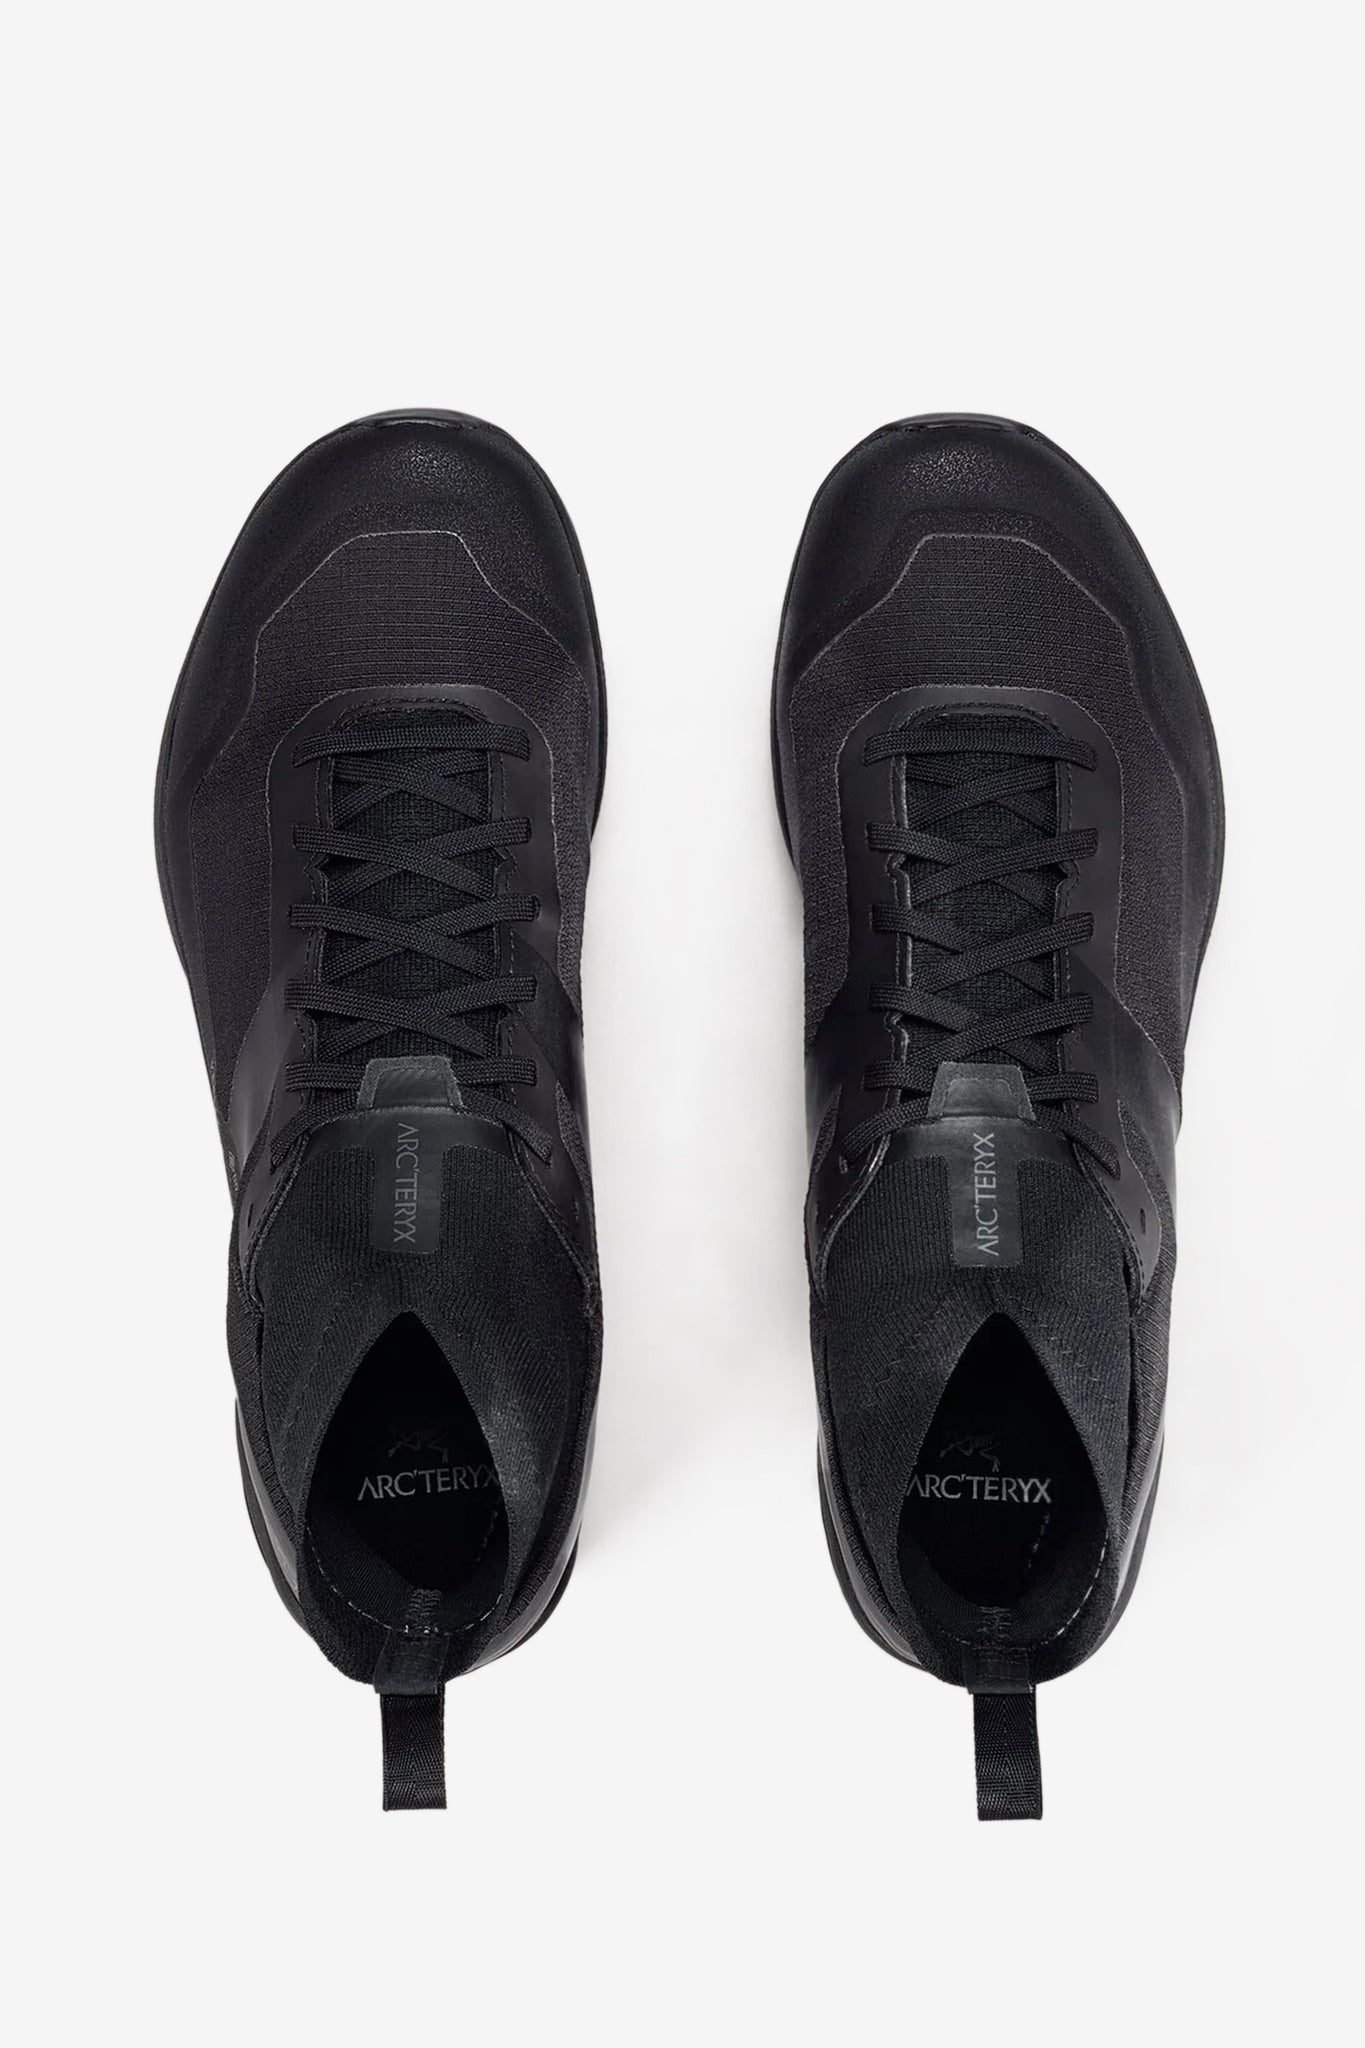 Arc'teryx Unisex Vertex GTX Shoe in Black/Black